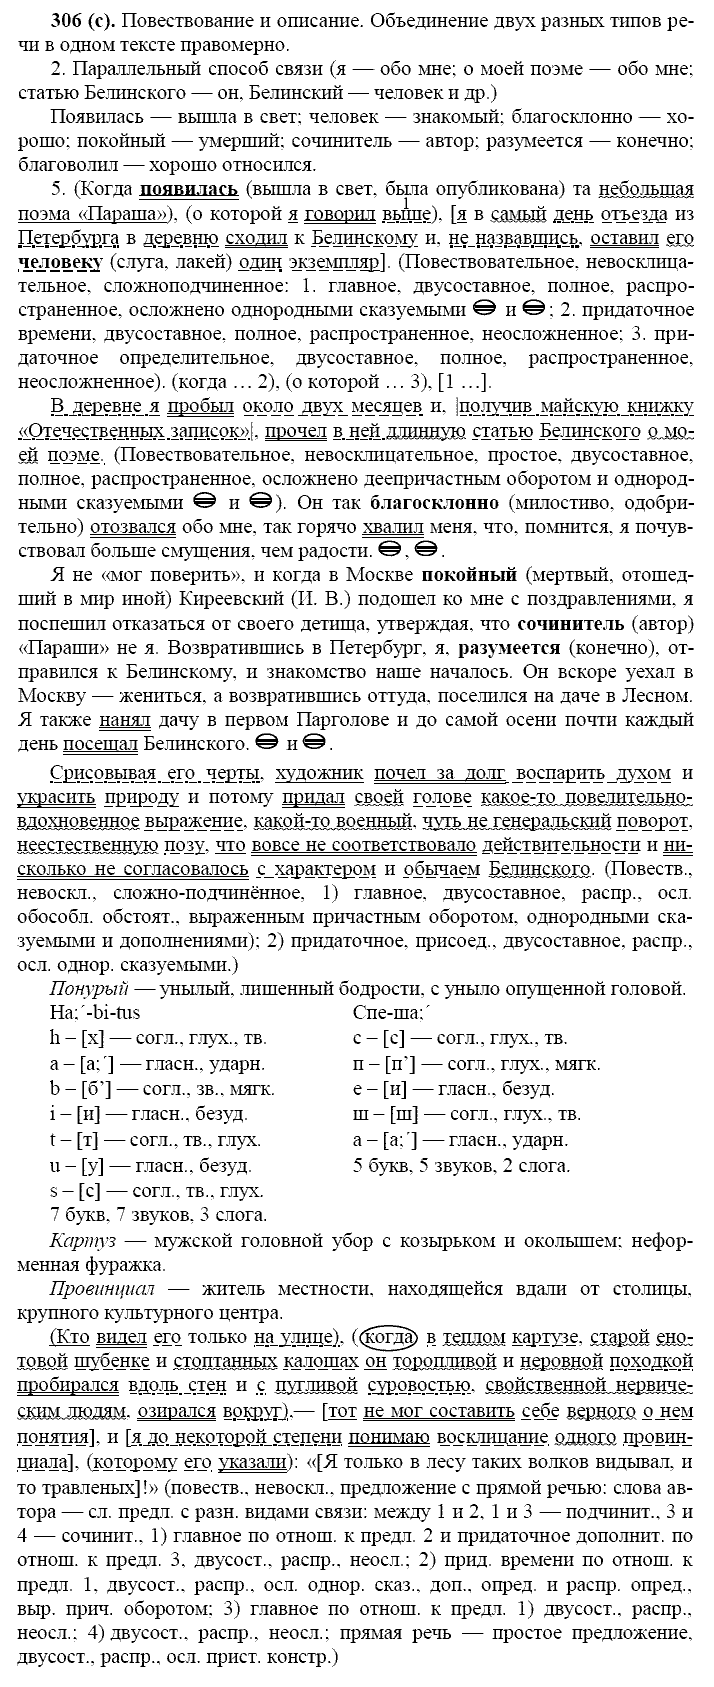 Русский язык, 11 класс, Власенков, Рыбченков, 2009-2014, задание: 306 (с)